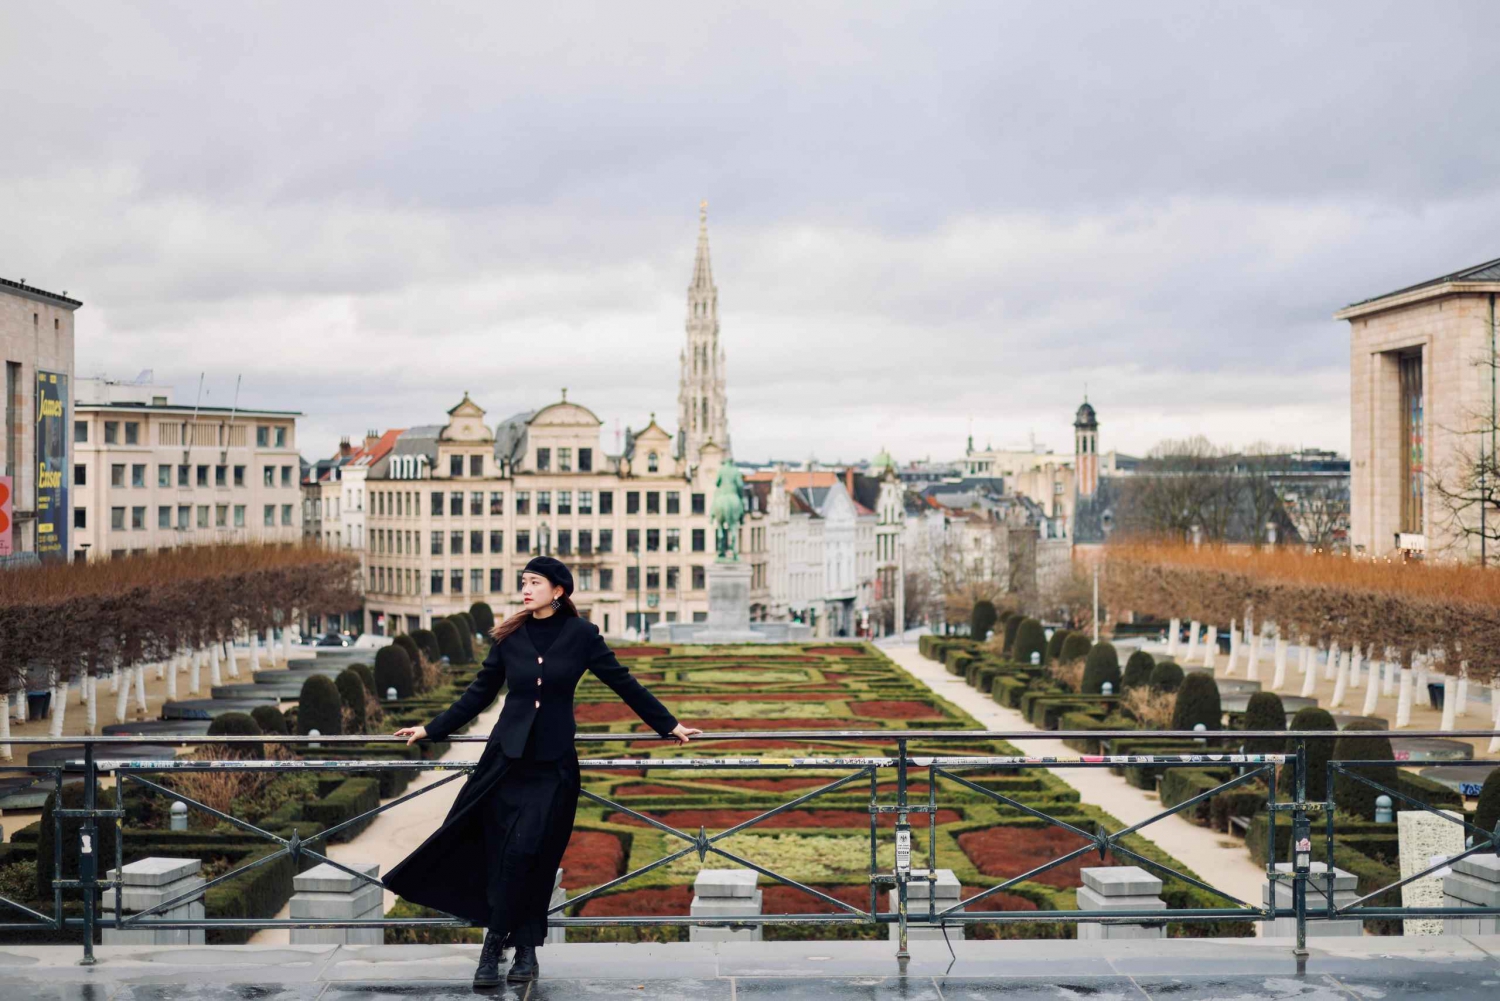 Photoshoot de la ville de Bruxelles avec un photographe professionnel